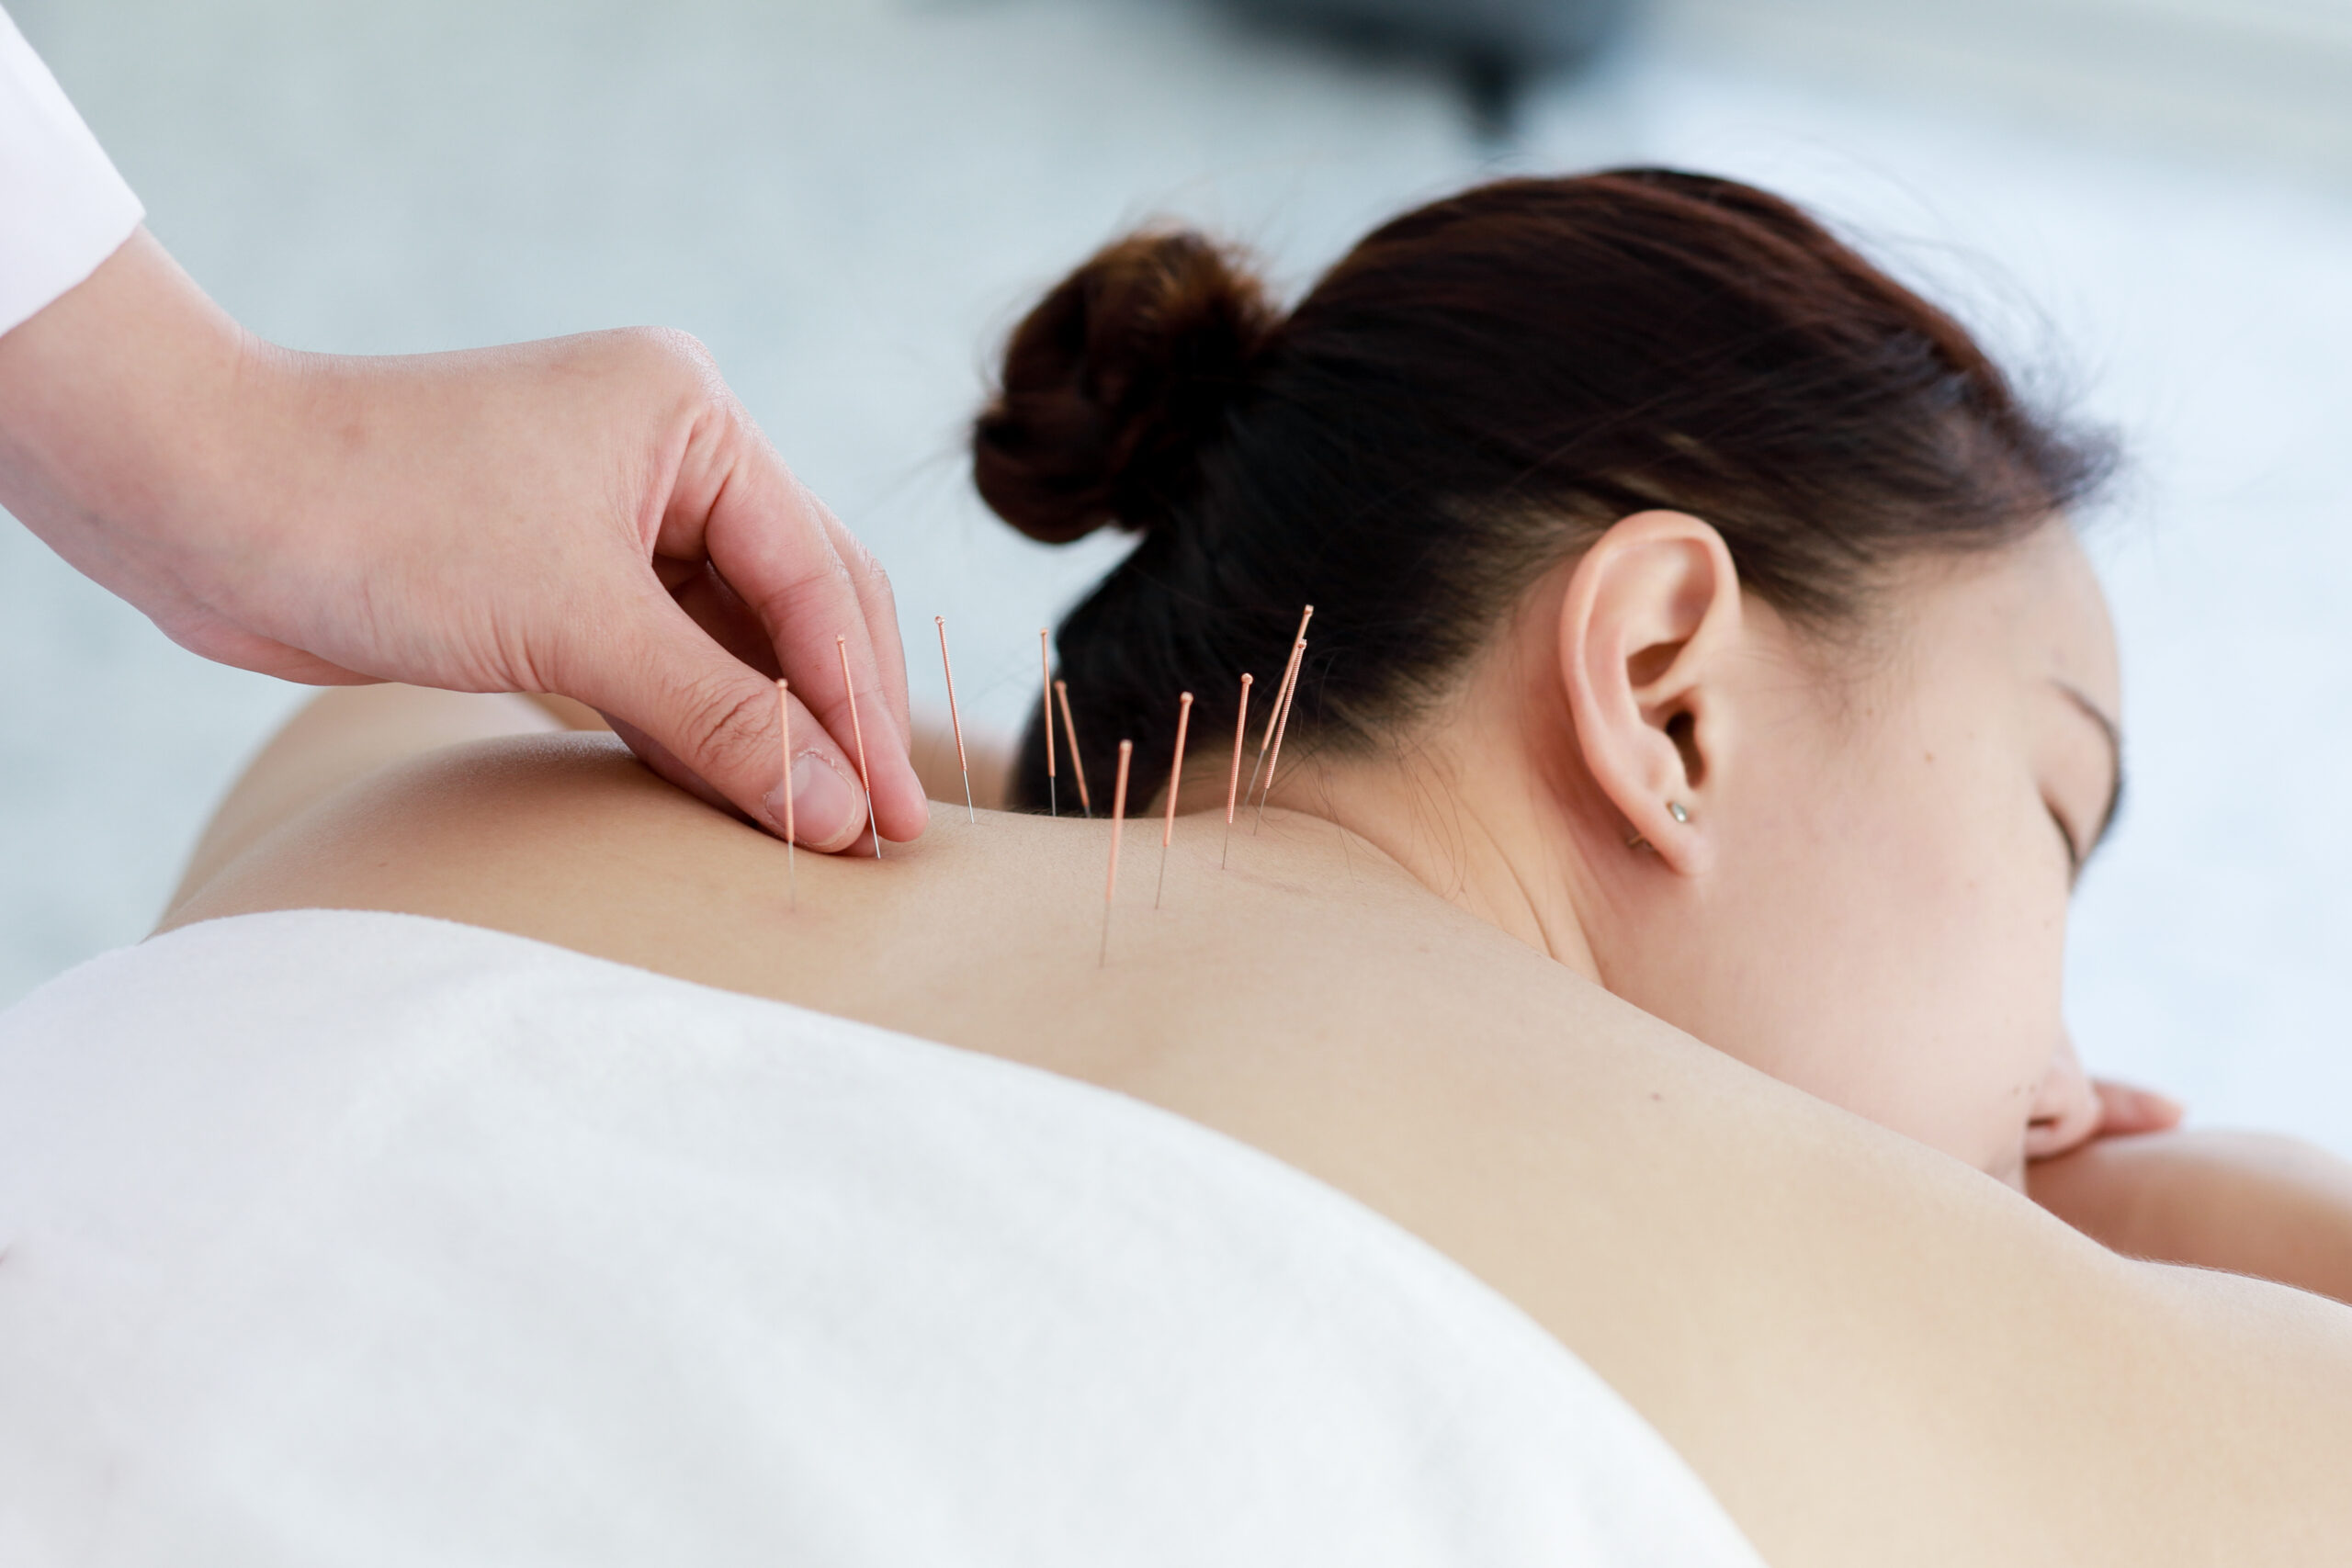 Você sente dor no ombro? A acupuntura pode te ajudar!